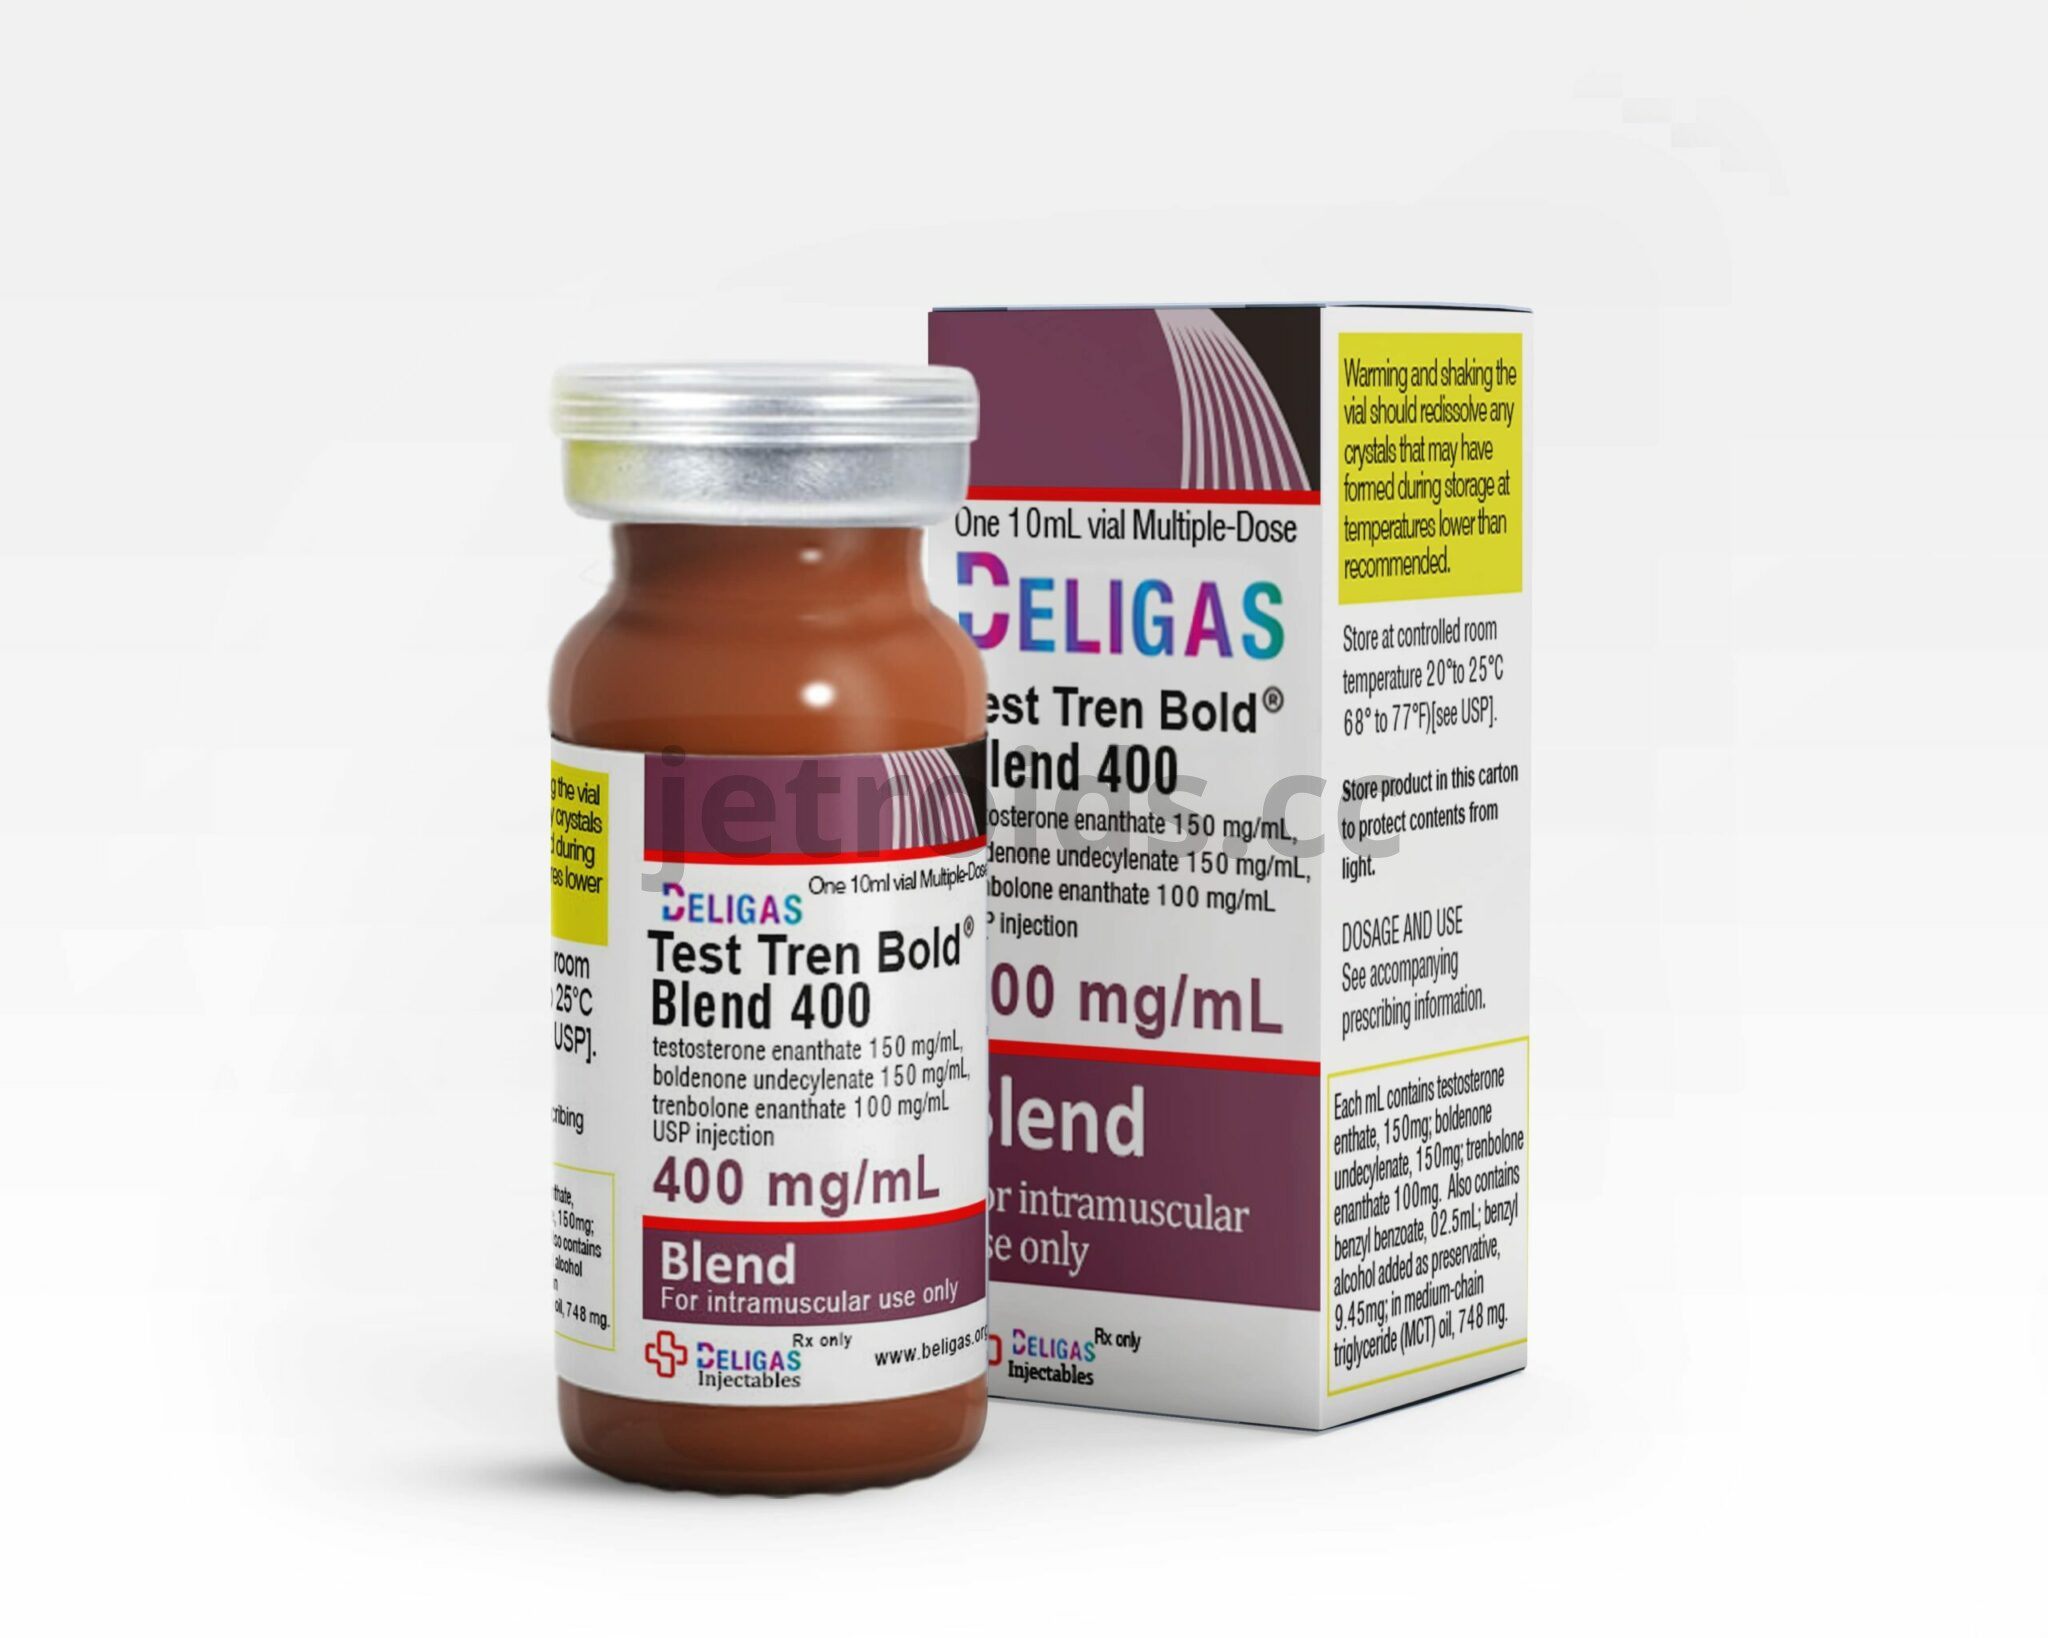 Beligas Pharma Test Tren Bold Blend 400mg/ml Product Info